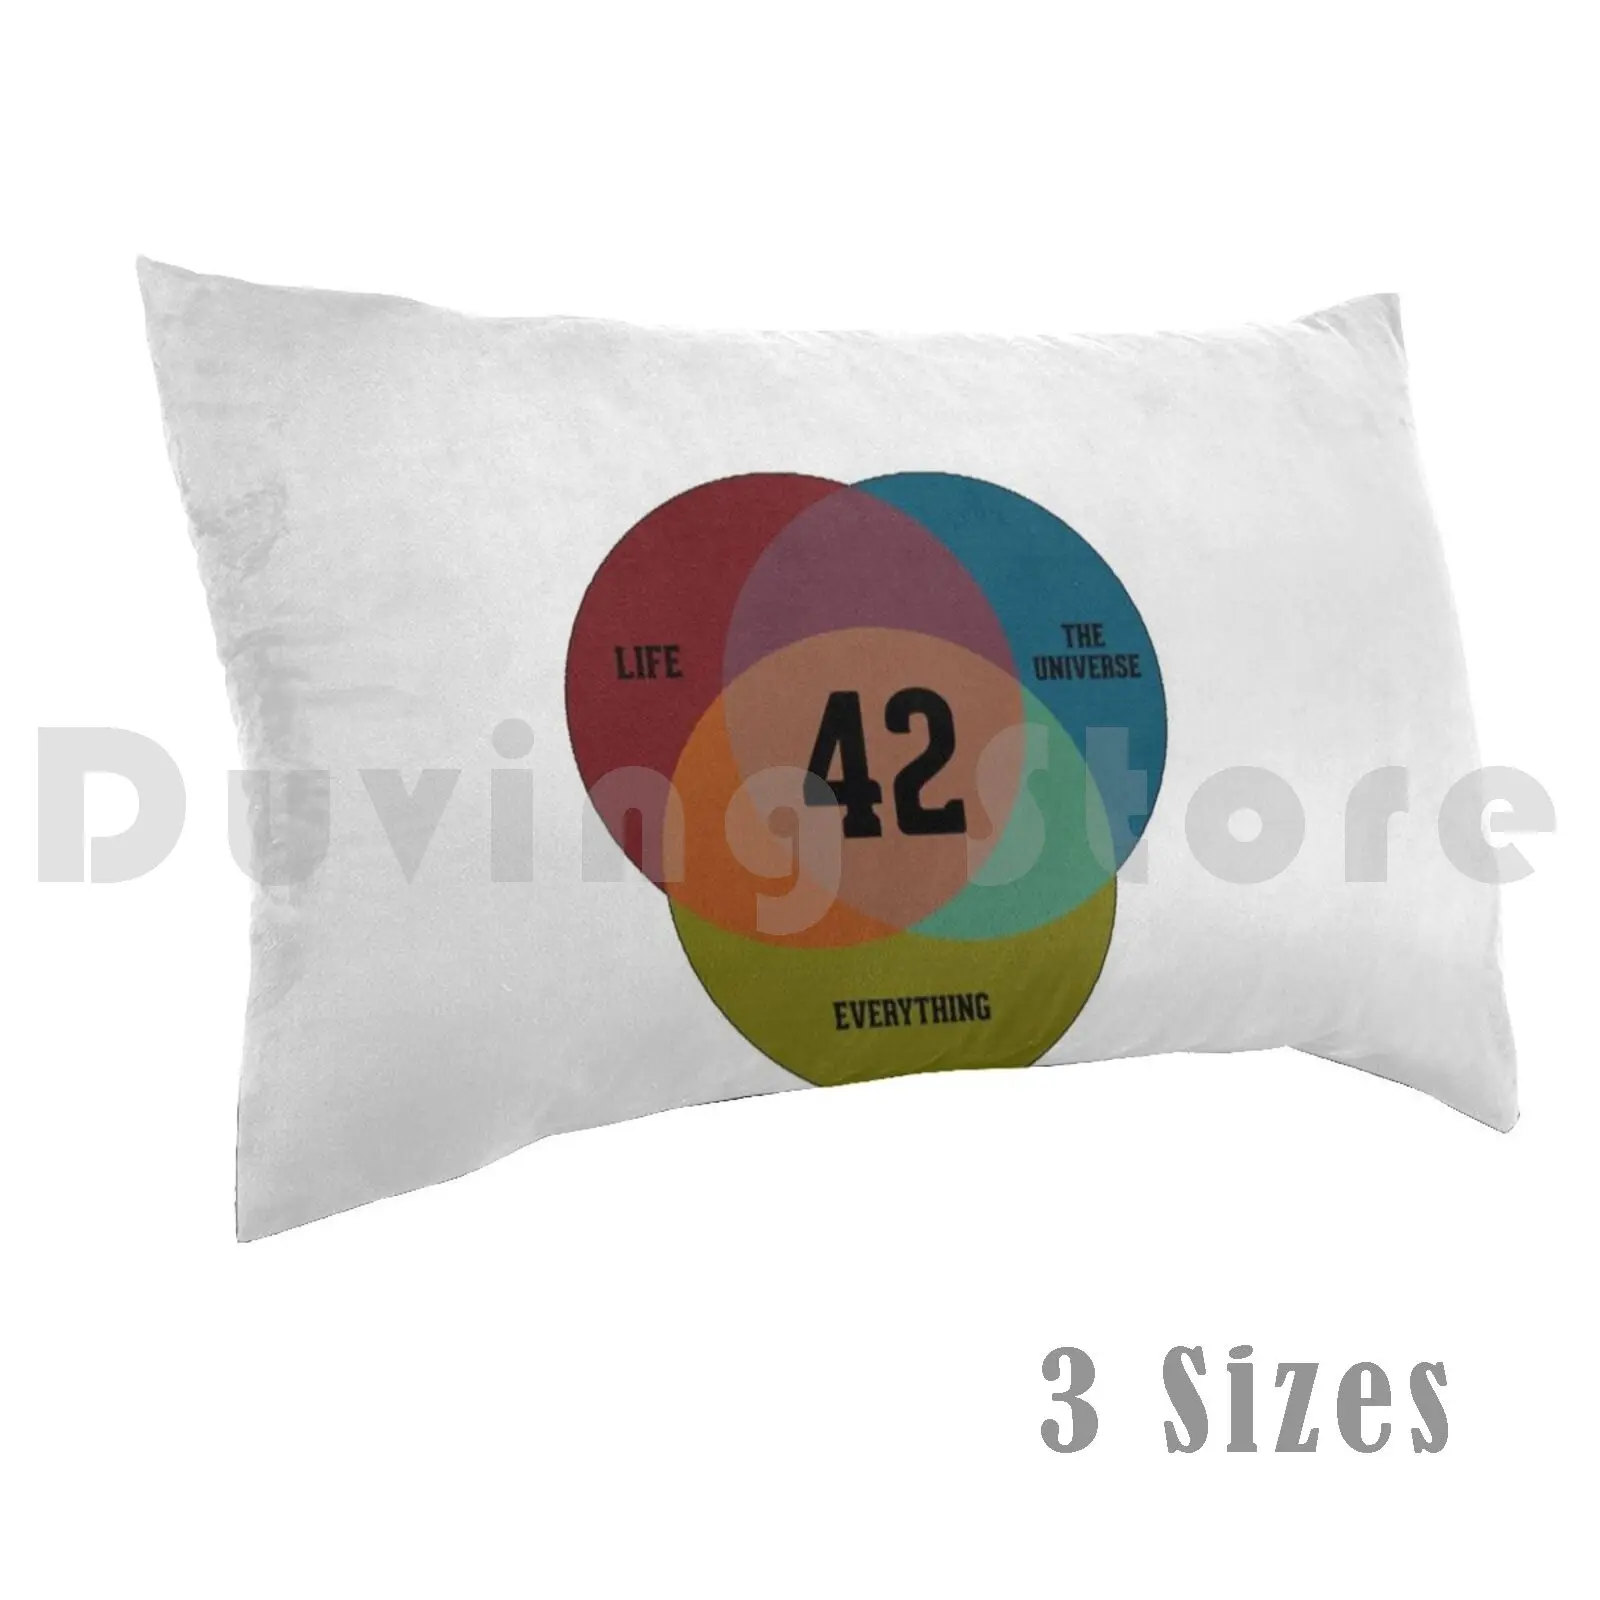 

42 забавная подушка для изучения науки, иллюстрации, чехол «сделай сам» 50x75 42, фийск, биология, математика, математика, наука